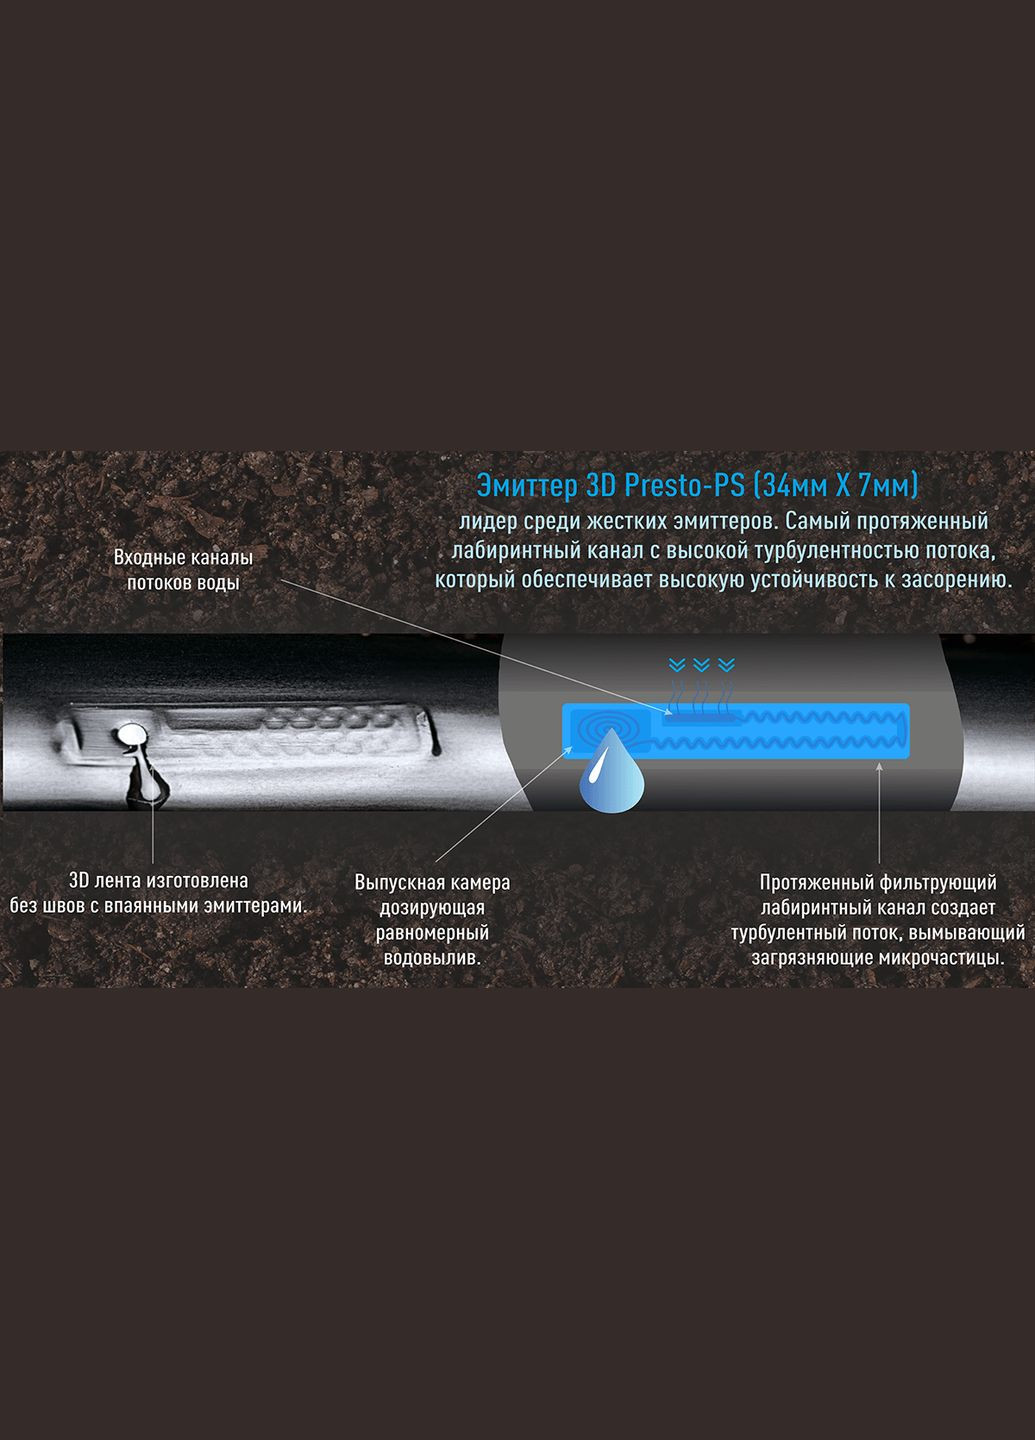 Крапельна стрічка евіттерна 3D Tube крапельниці через 20 см, витрата 2.7 л/год, довжина 1000 м (3D20-1000) Presto-PS (280877295)